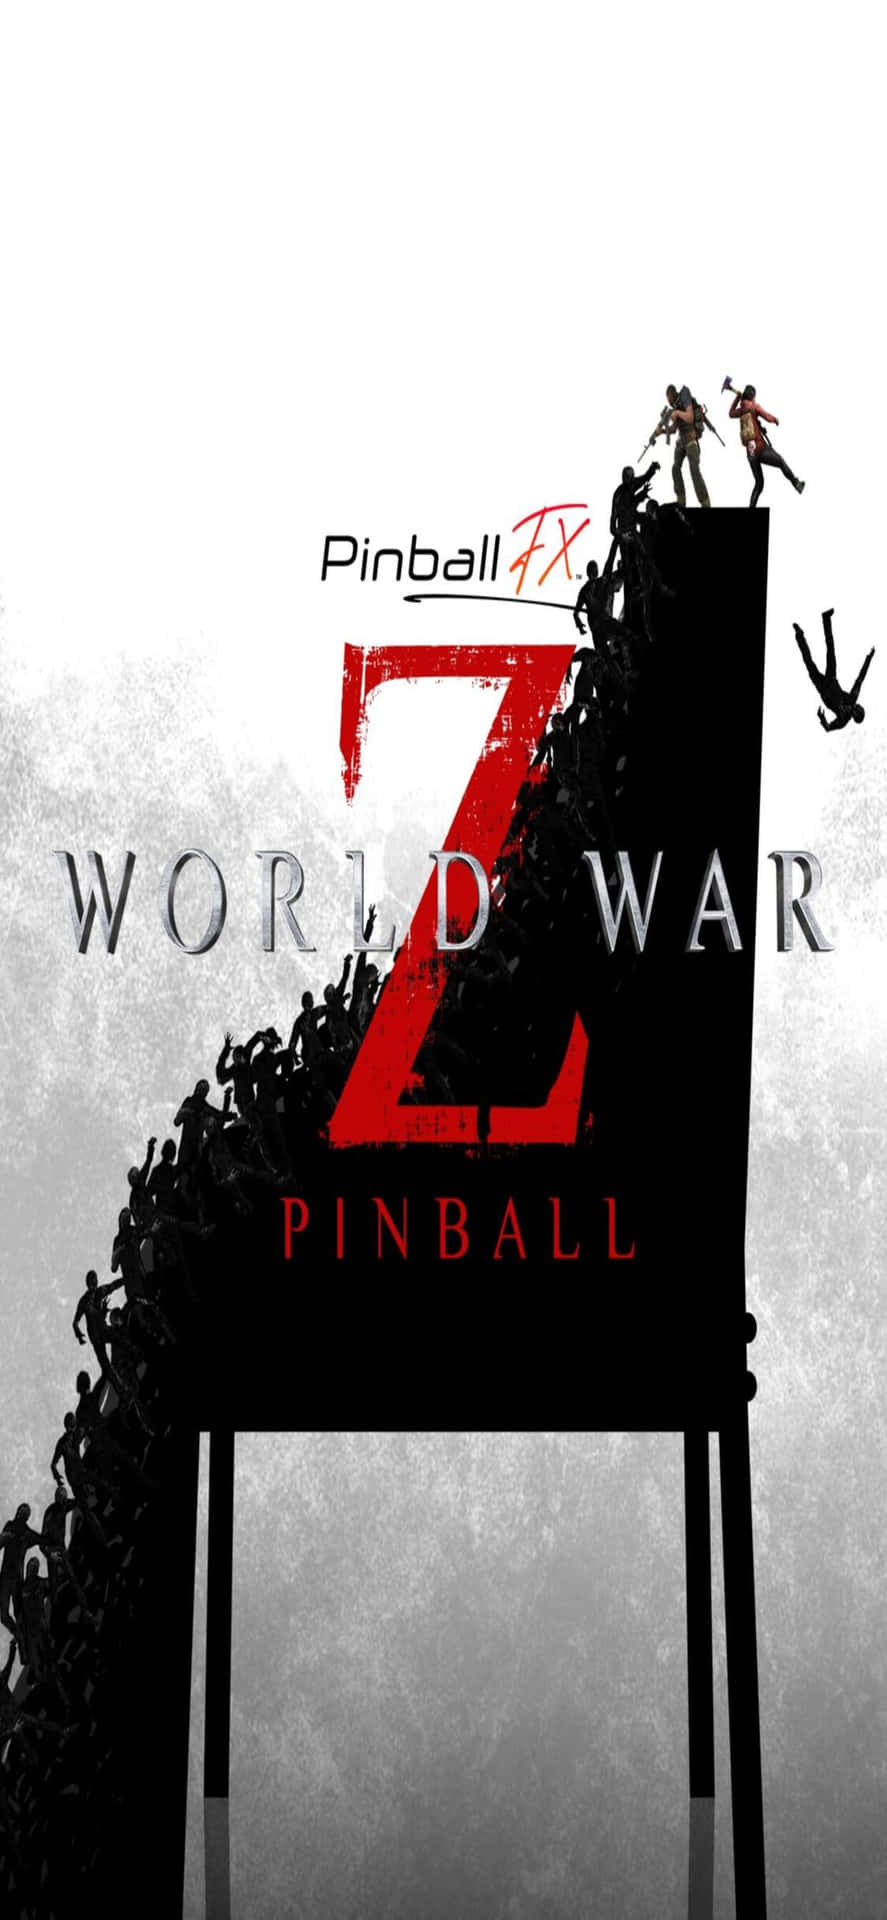 Sfondodel Poster Di Pinball Fx Per Iphone Xs Max Sfondo Di World War Z